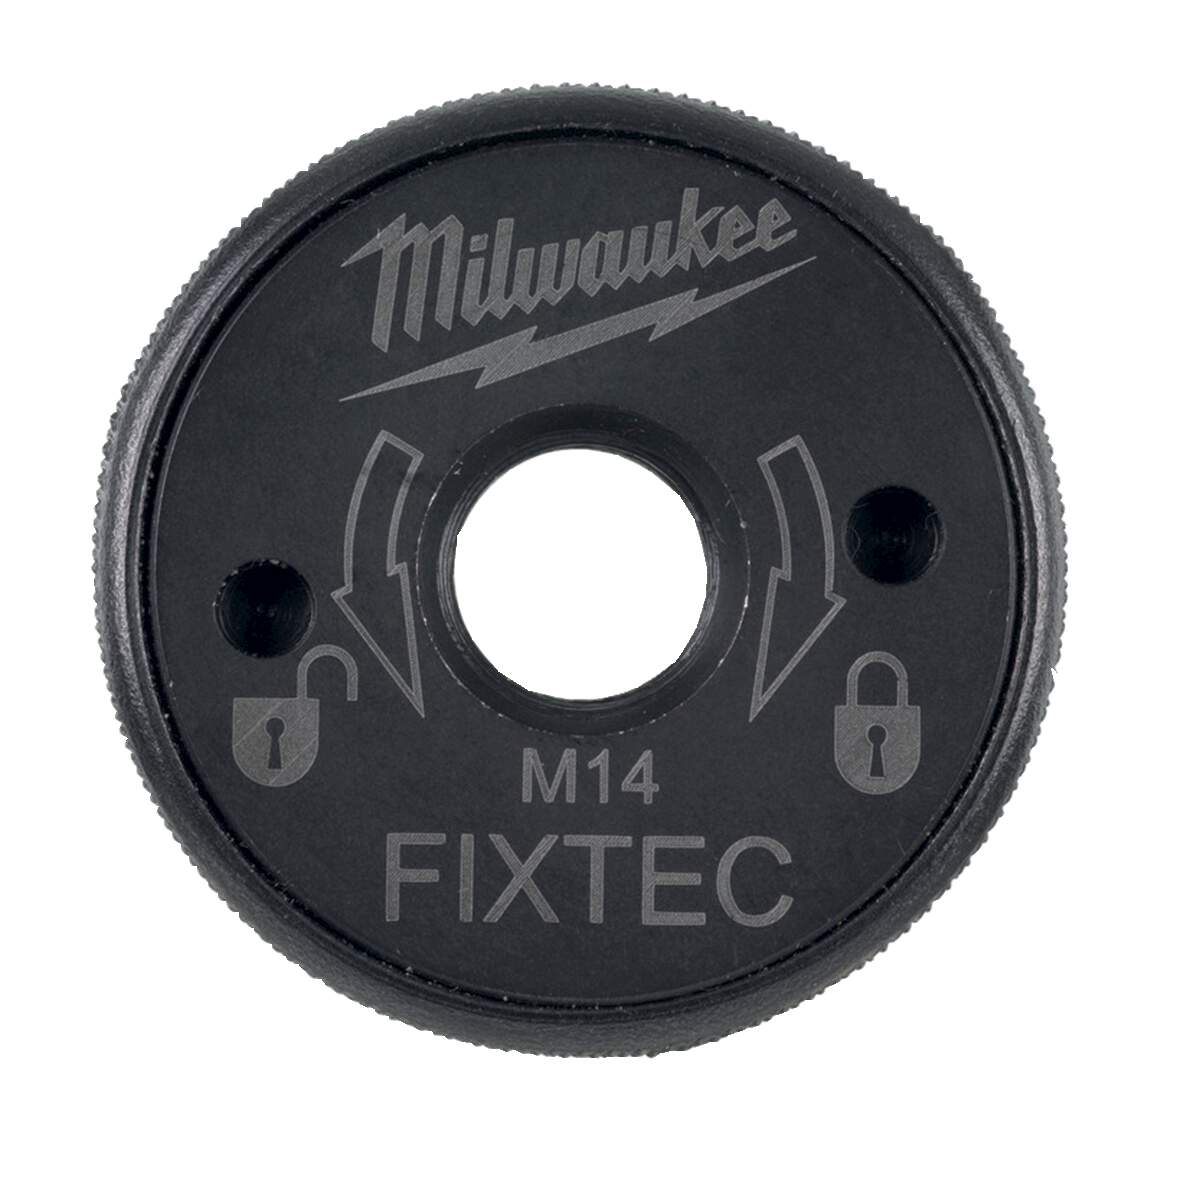 1261824 - FIXTEC Mutter XL M14